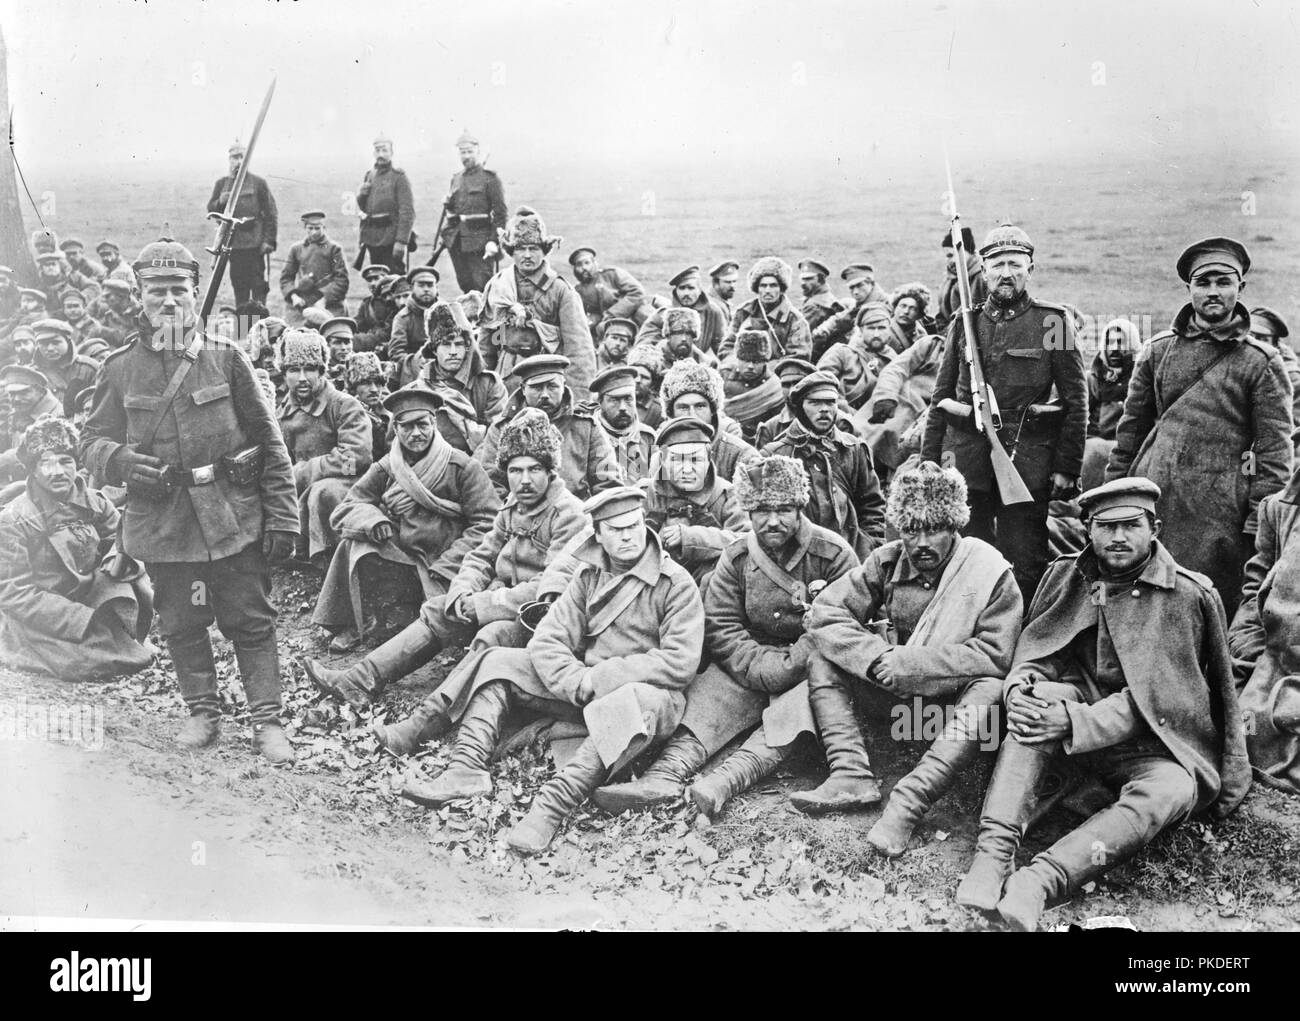 Les prisonniers russes, russes, tatars, Kirgises Kirghize, prisonniers de guerre russes pendant la Première Guerre mondiale. Banque D'Images